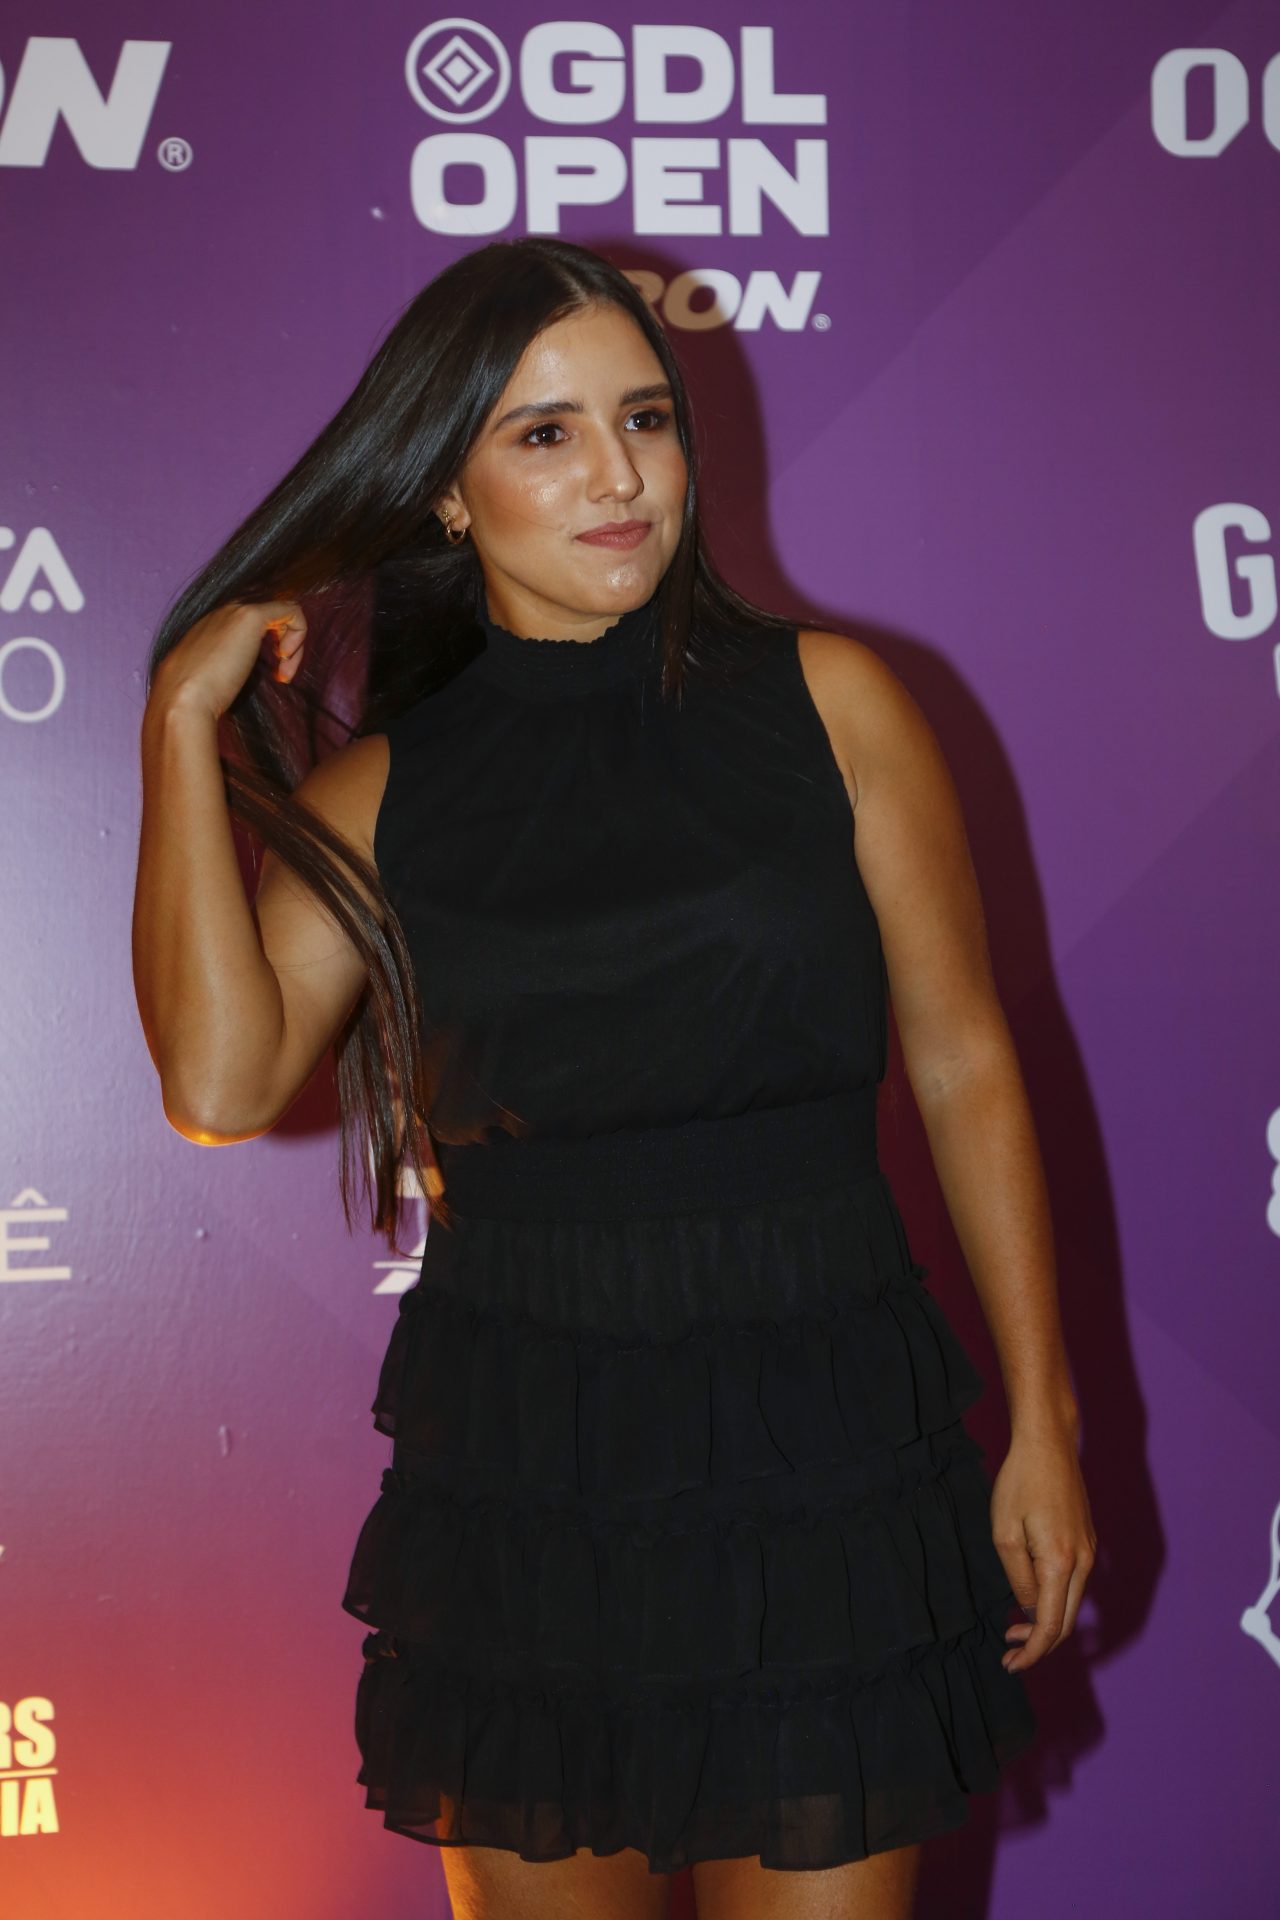 La Colombiana Camila Osorio Optimista Tras Adaptarse A La Altura En Guadalajara La Oferta 2804